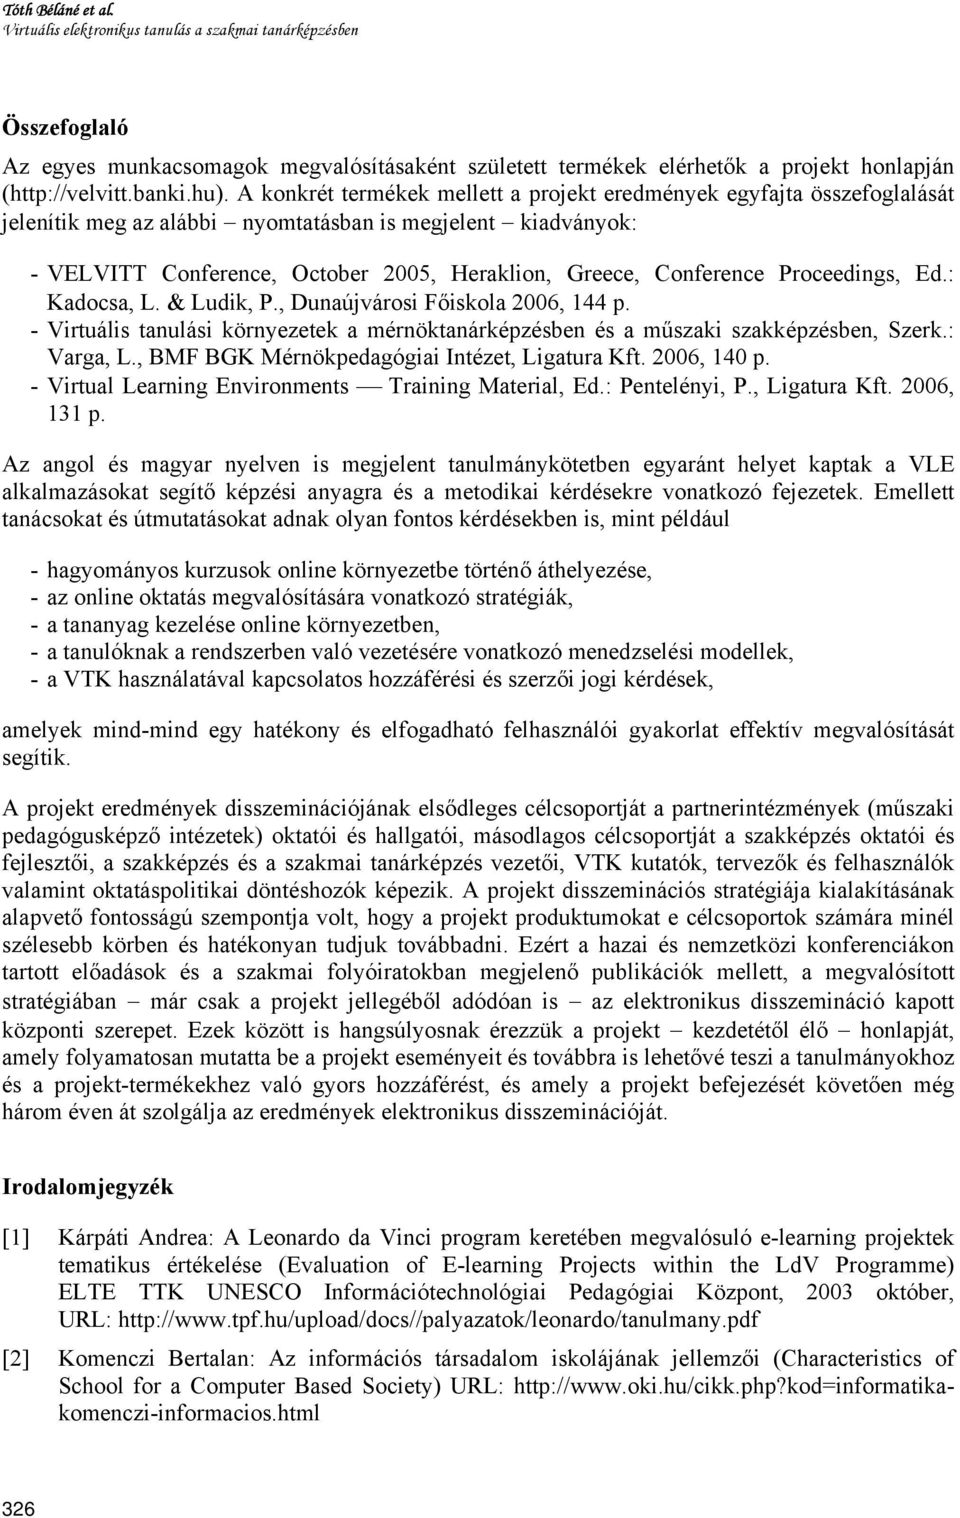 Conference Proceedings, Ed.: Kadocsa, L. & Ludik, P., Dunaújvárosi Főiskola 2006, 144 p. - Virtuális tanulási környezetek a mérnöktanárképzésben és a műszaki szakképzésben, Szerk.: Varga, L.